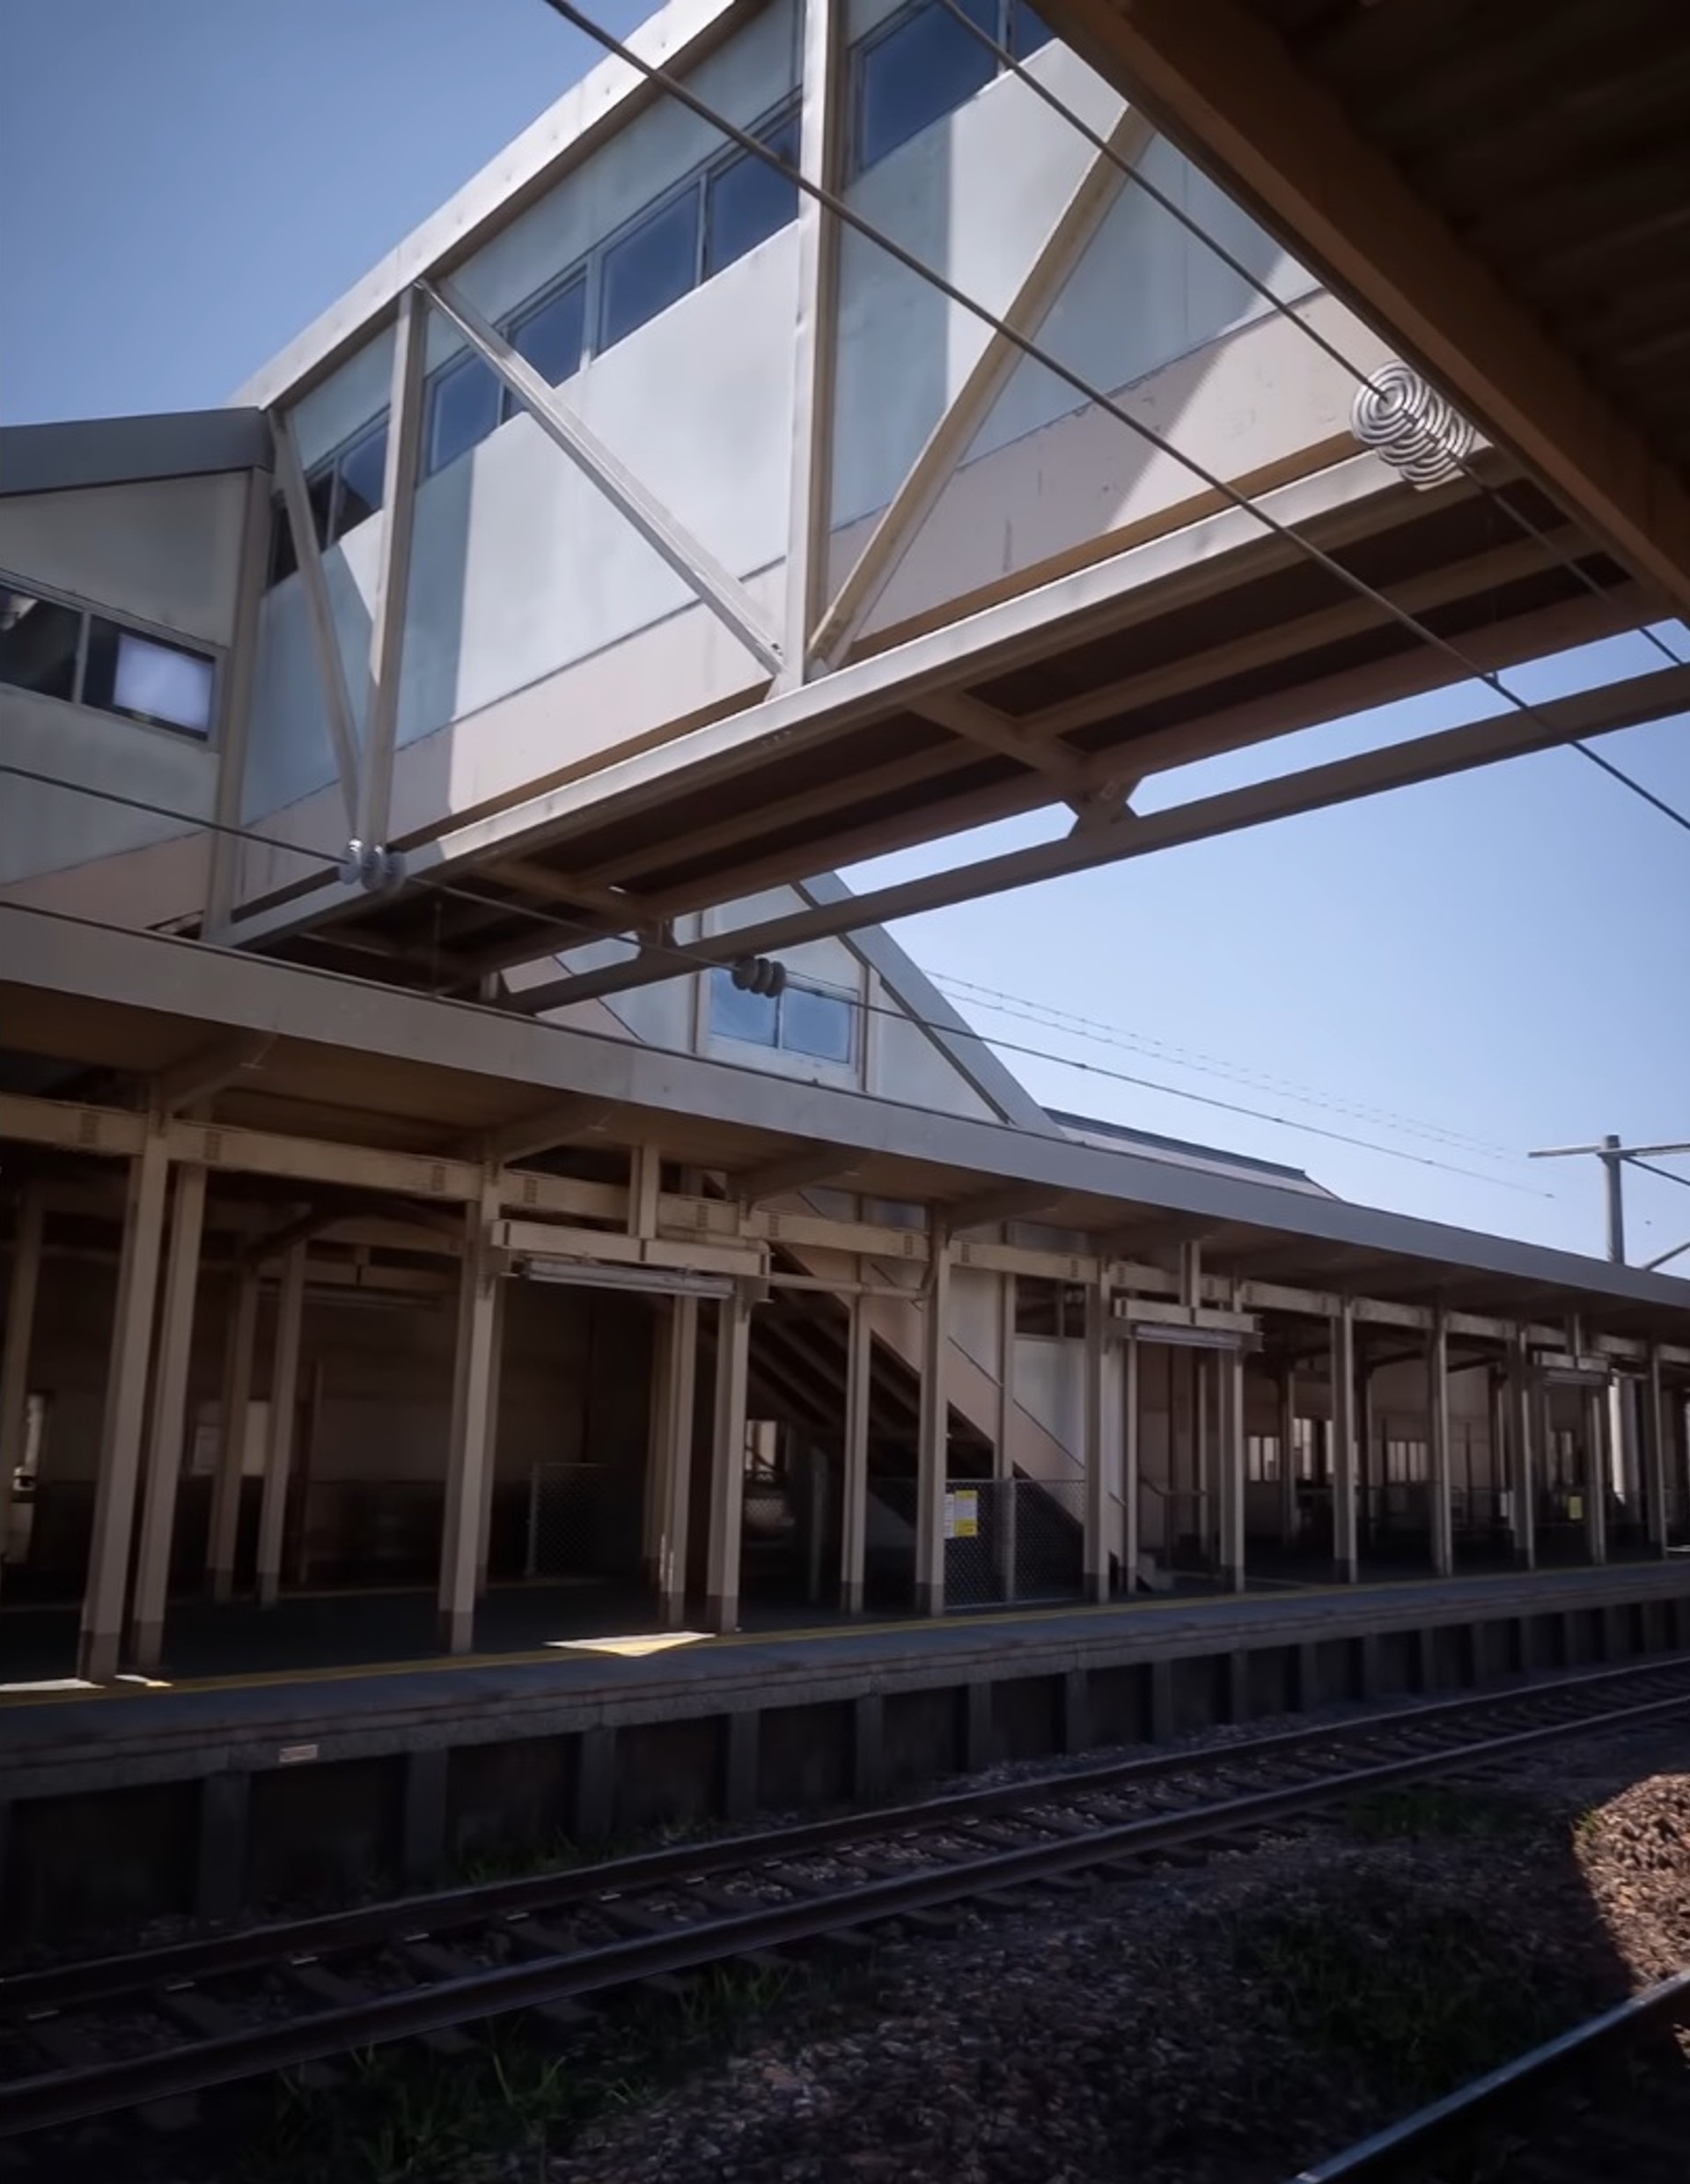 ศิลปินนำ Unreal Engine 5 สร้างสถานีรถไฟจนออกมานึกว่าสถานที่จริง